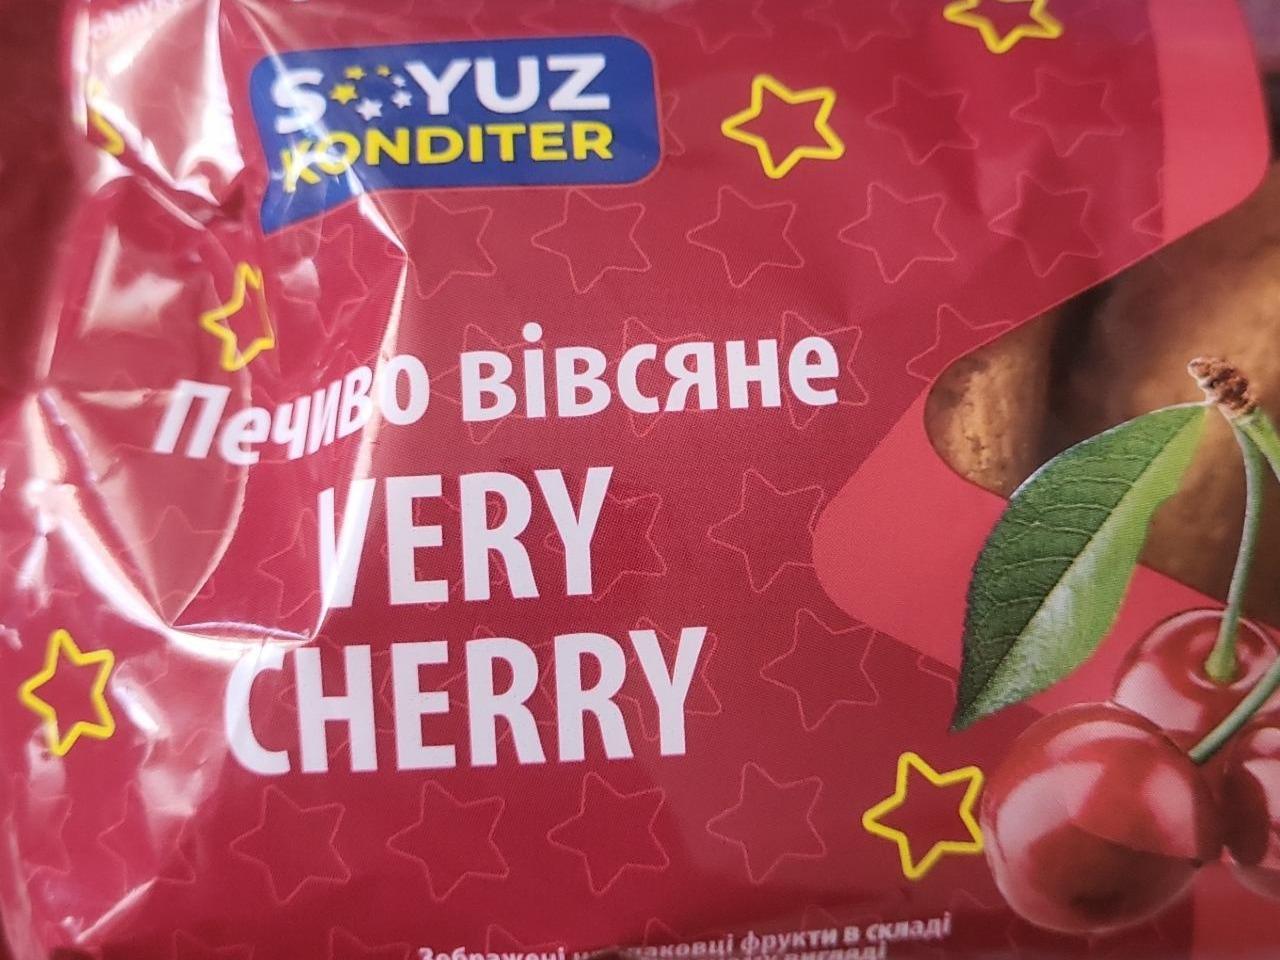 Фото - Печиво вівсяне very cherry Soyuz Konditer